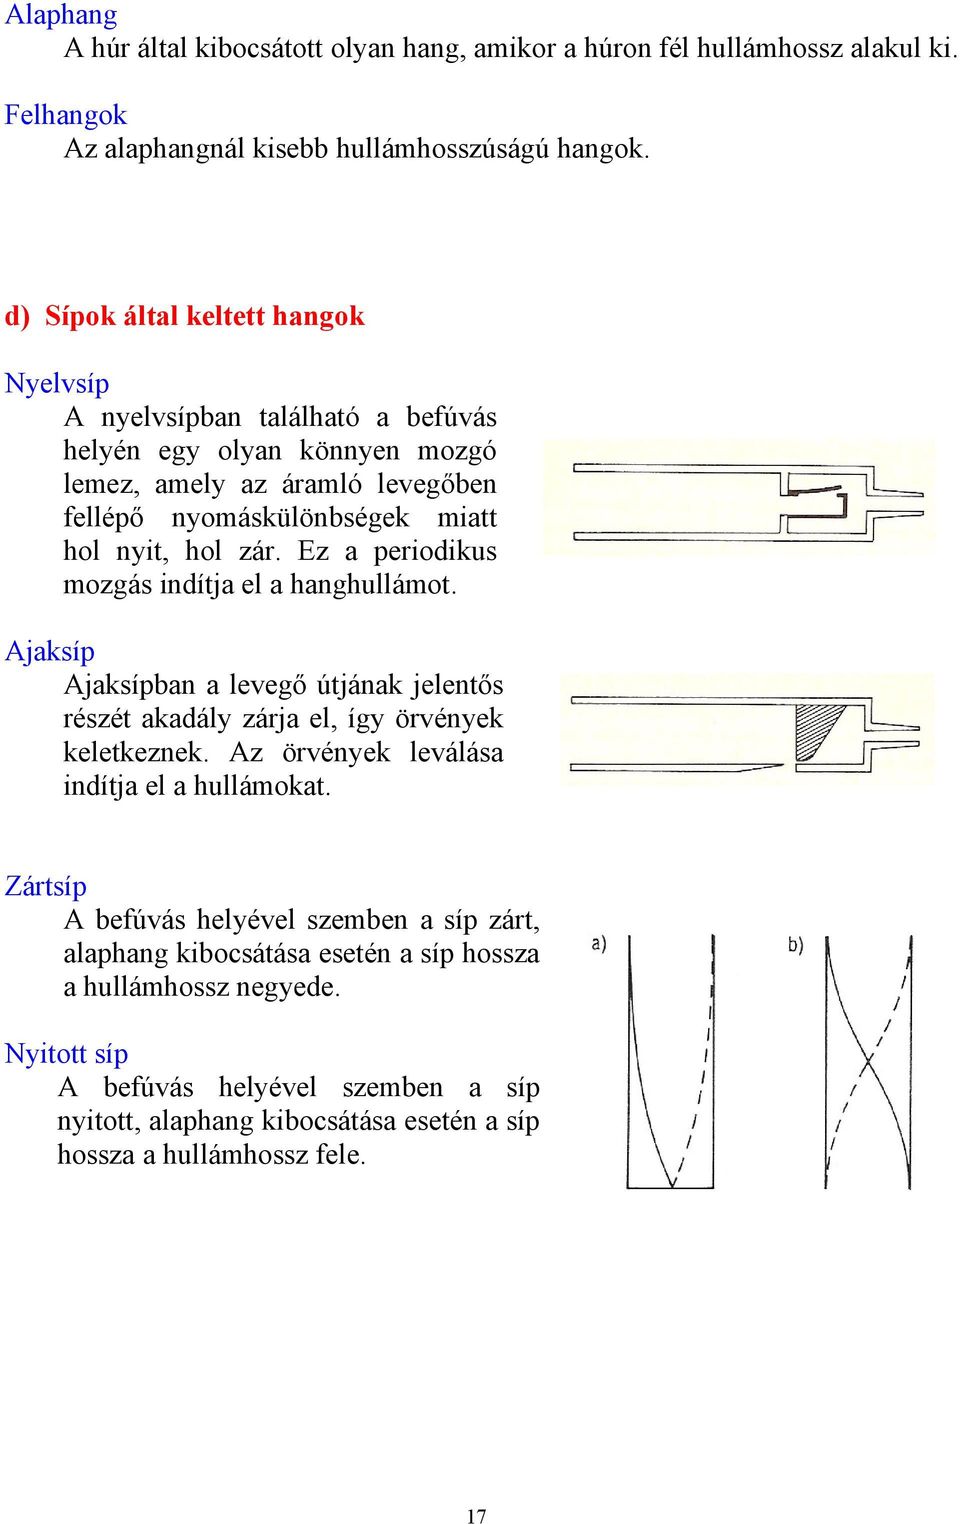 Mechanikai hullámok (Vázlat) - PDF Ingyenes letöltés